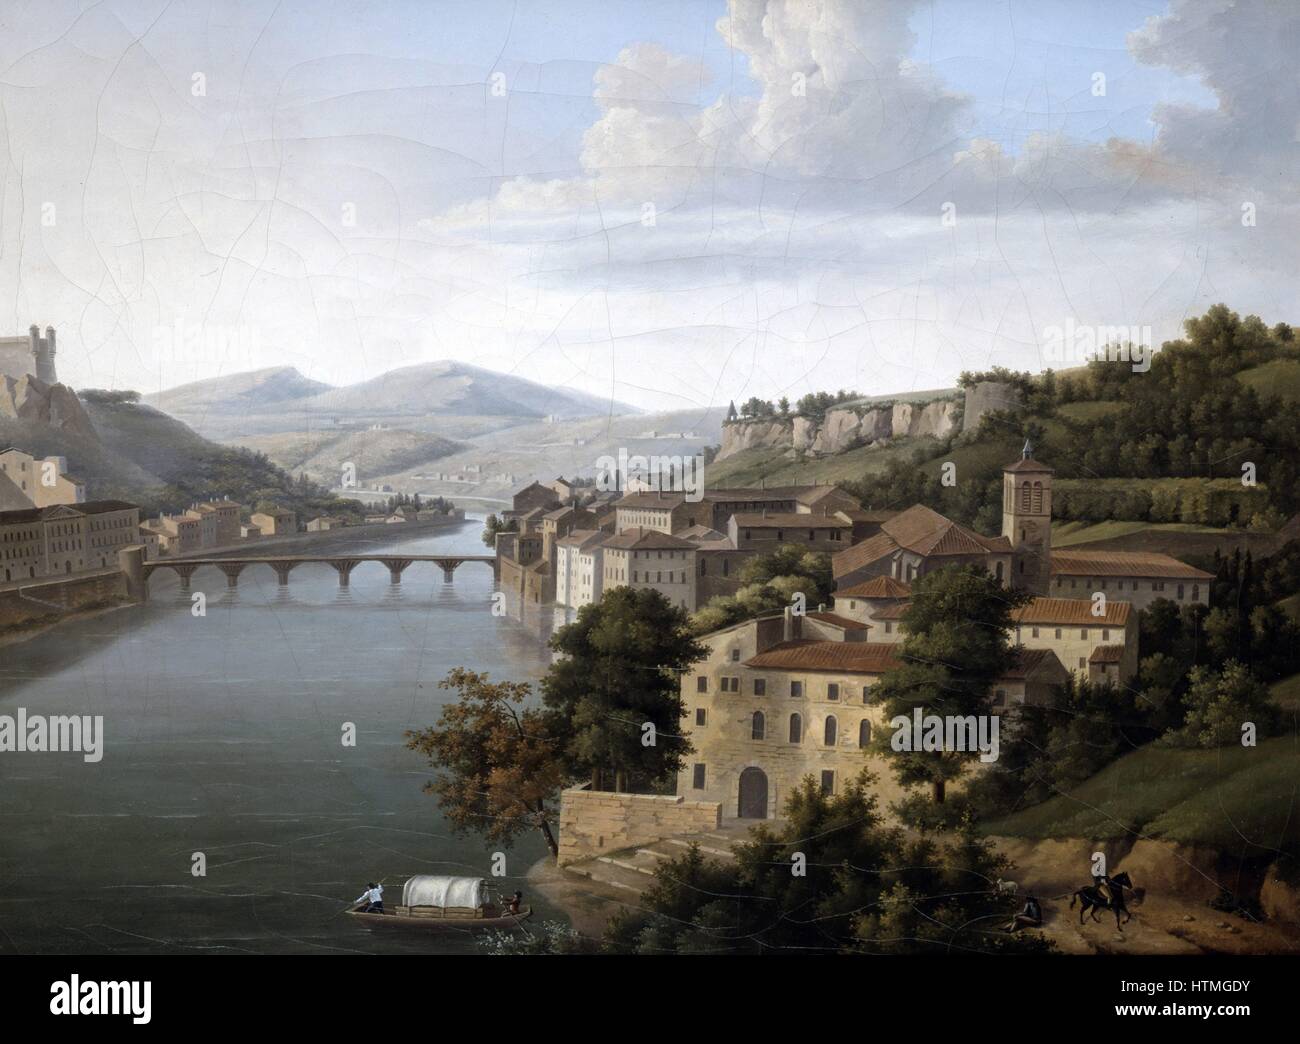 'Blick auf die Rhone': Flusslandschaft mit Brücke, Gebäude an beiden Ufern des Wassers. Alexandrine Hyacinthe Dunouy (1757-1841), französischer Maler. Öl auf Leinwand. Stockfoto